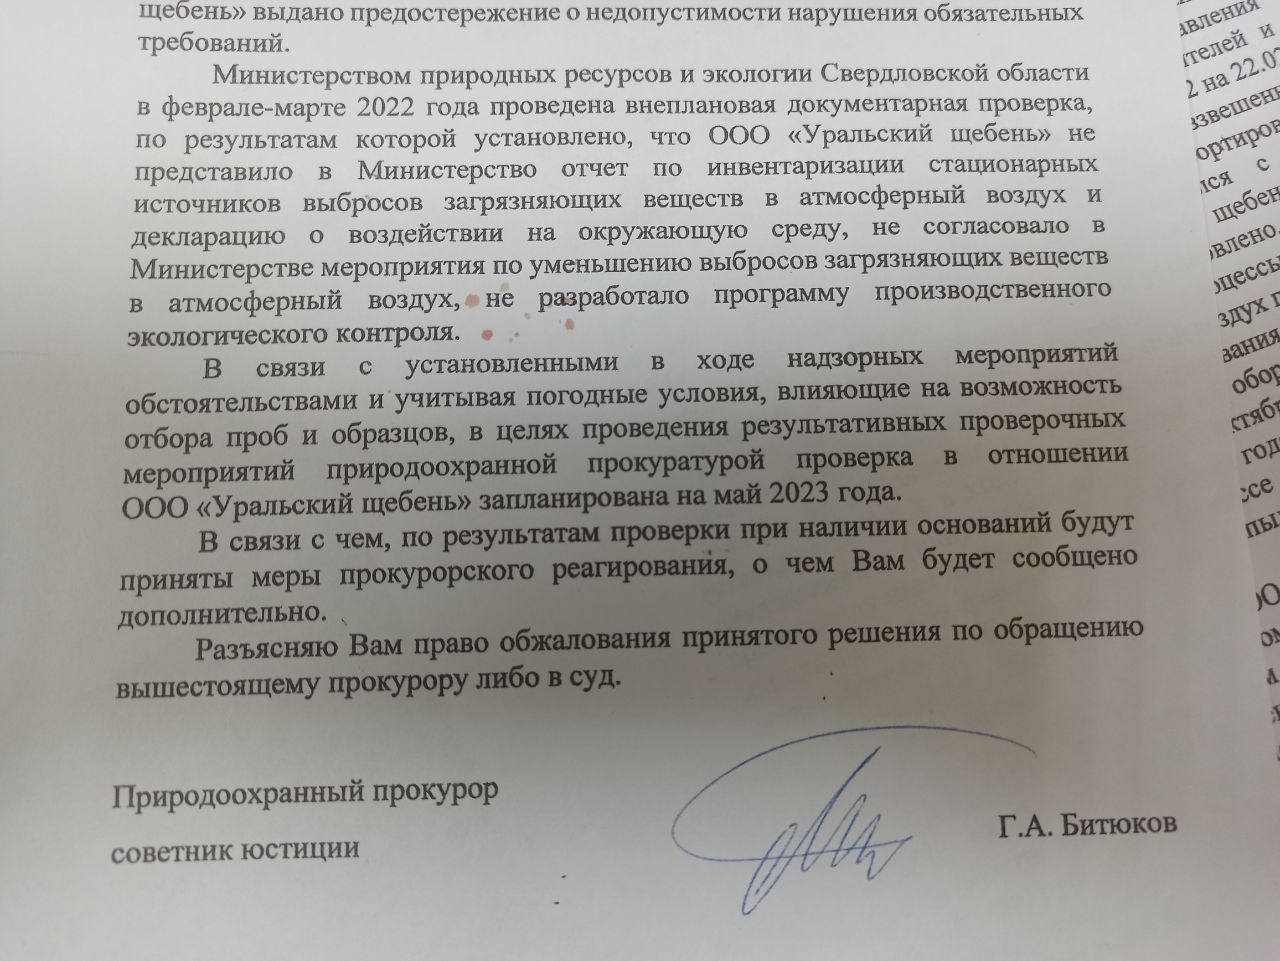 Председатель СК РФ Бастрыкин поручил проверить «Уральский щебень» на нарушения законодательства